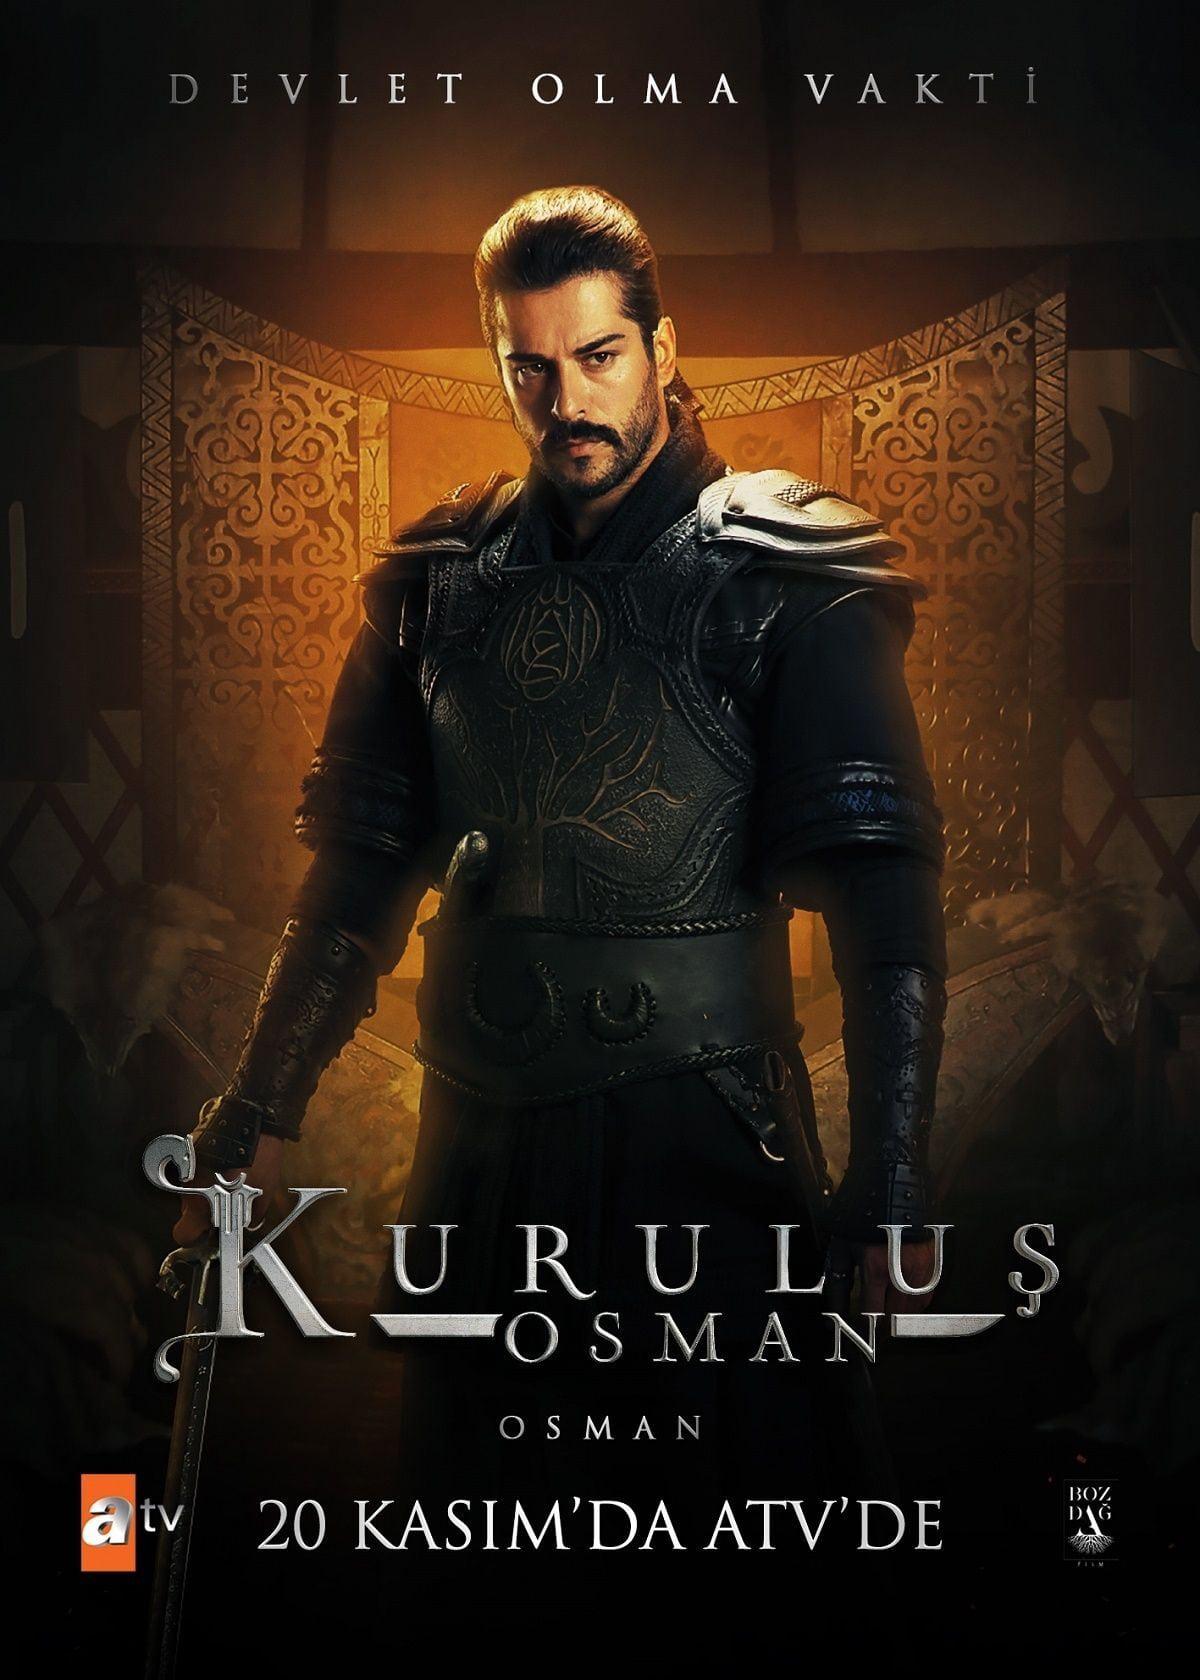 TV ratings for Kurulus: Osman in Spain. ATV TV series